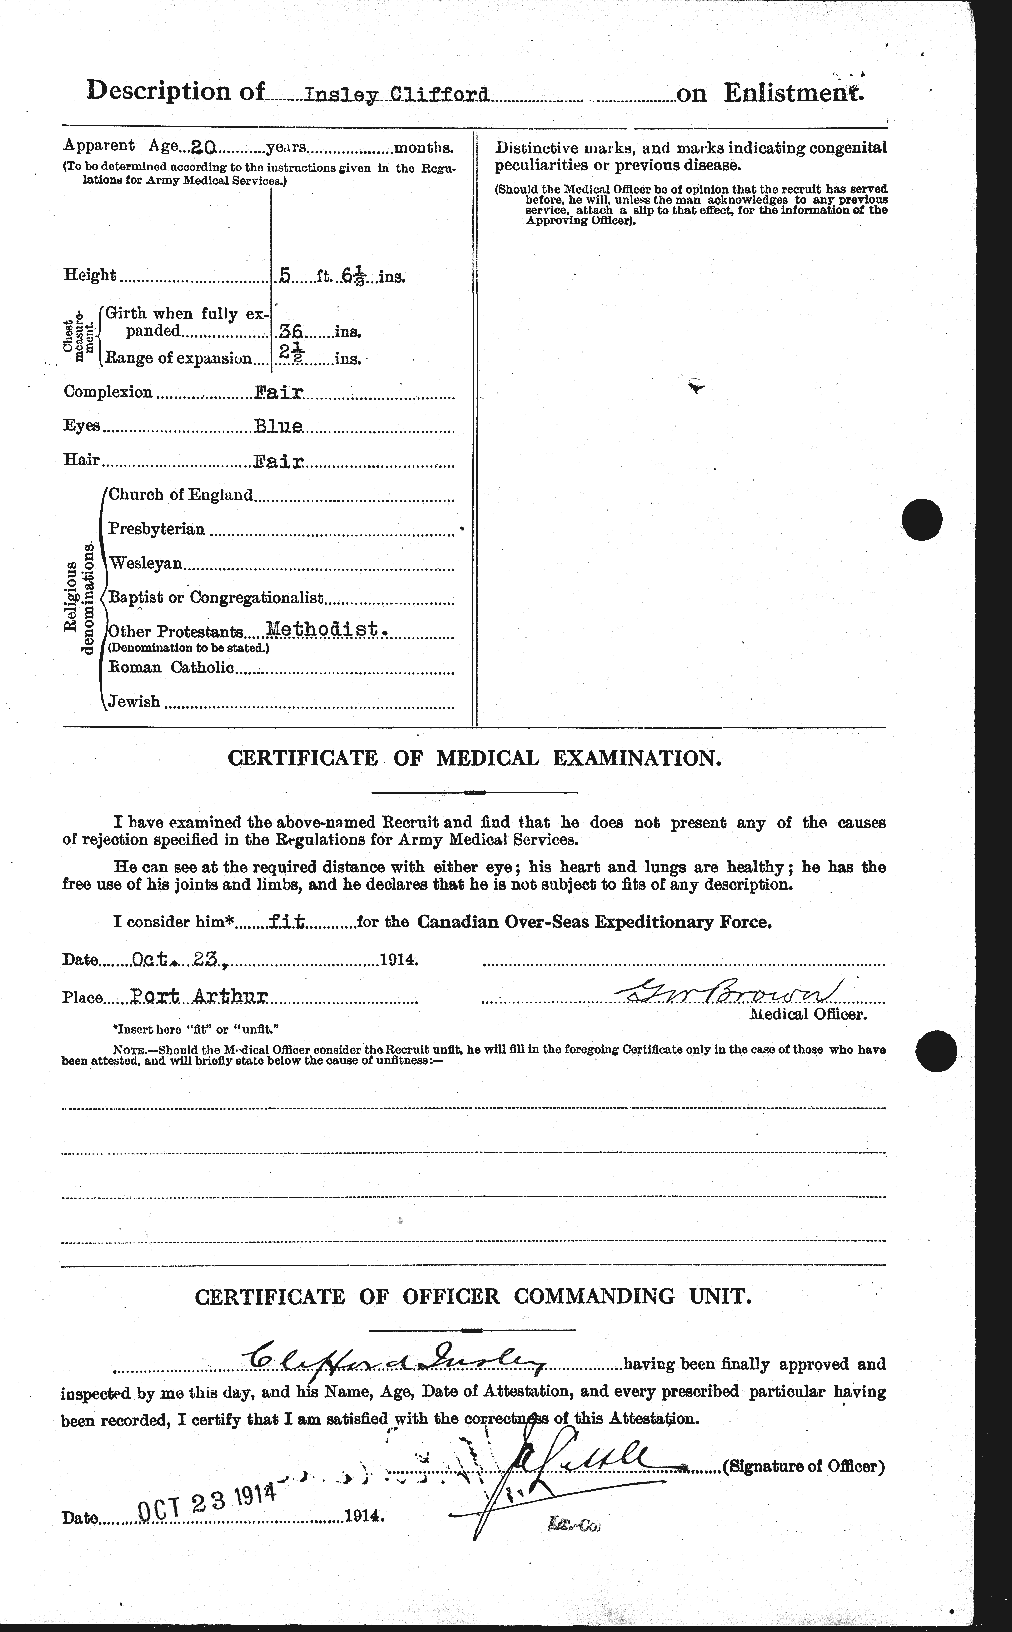 Dossiers du Personnel de la Première Guerre mondiale - CEC 415522b